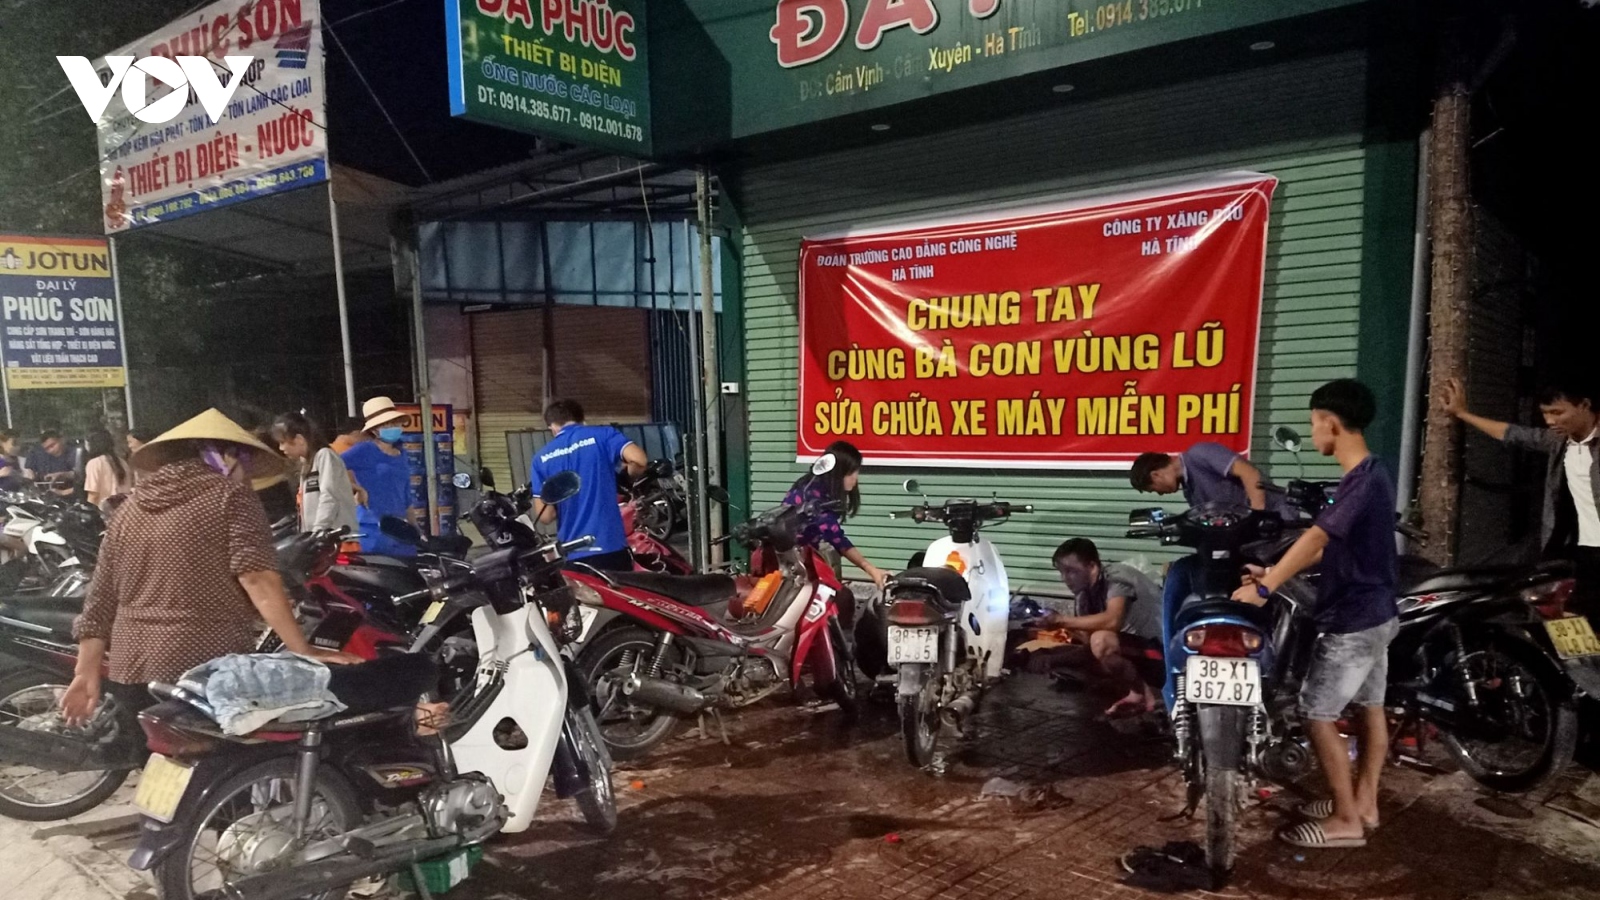 Đội quân sửa xe miễn phí “hồi sinh” xe máy cho bà con vùng tâm lũ Hà Tĩnh